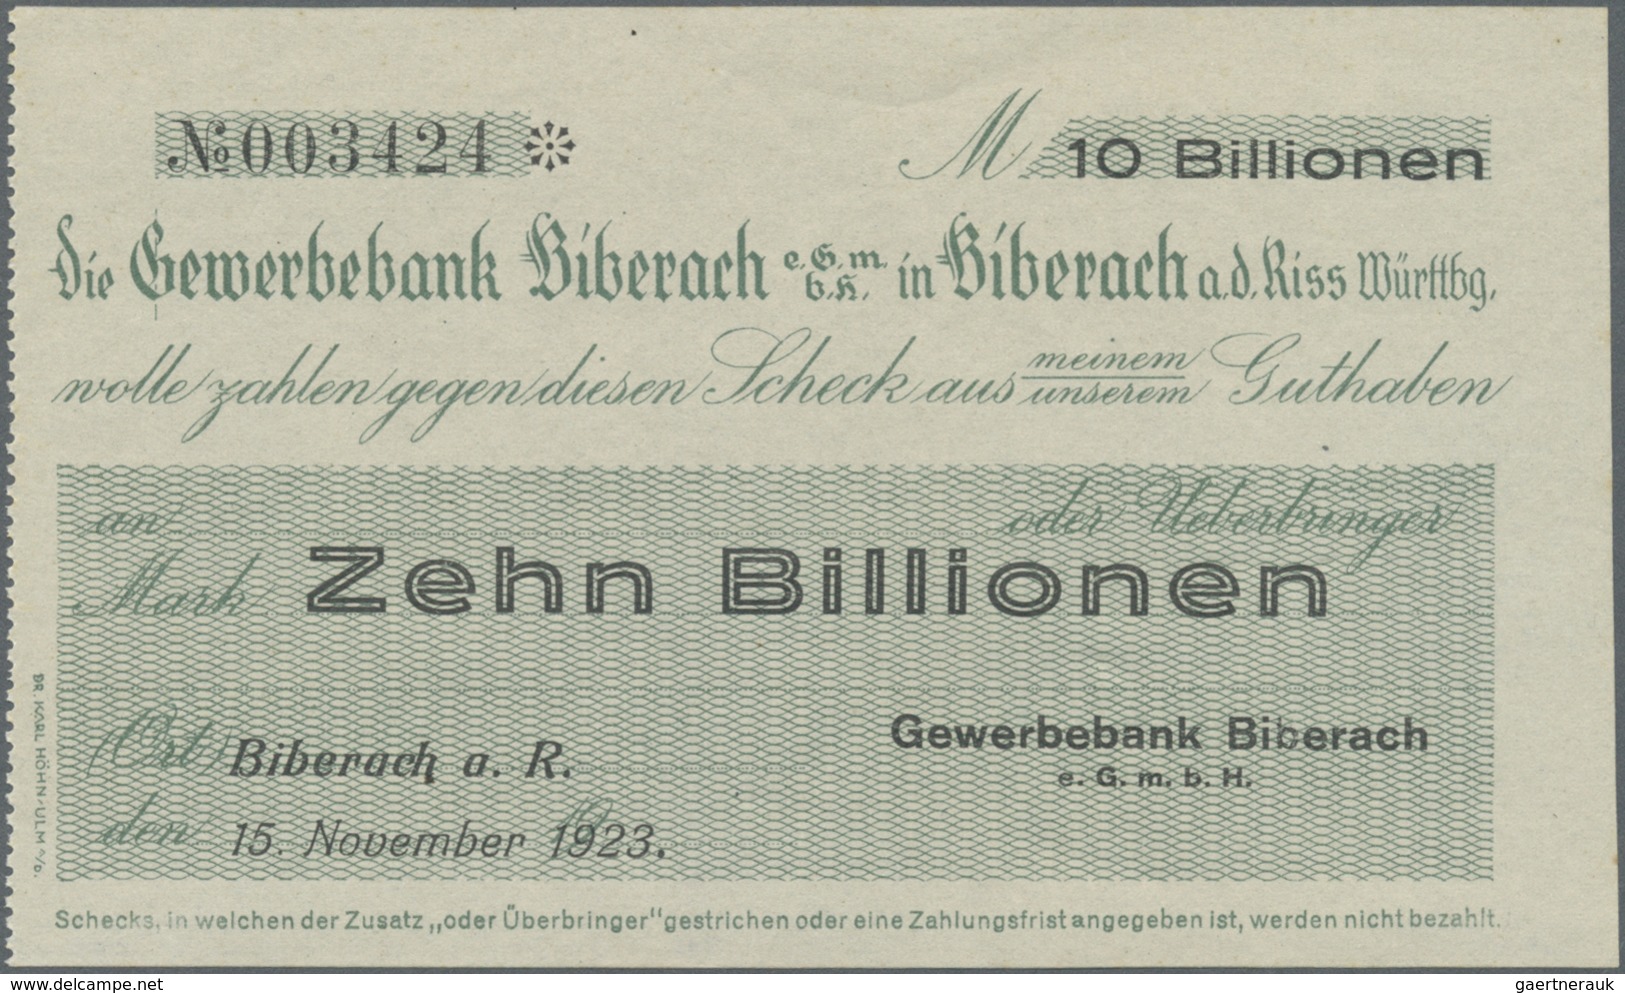 Deutschland - Notgeld - Württemberg: Biberach, Gewerbebank, 10 Billionen Mark, 15.11.1923, Erh. I - [11] Local Banknote Issues